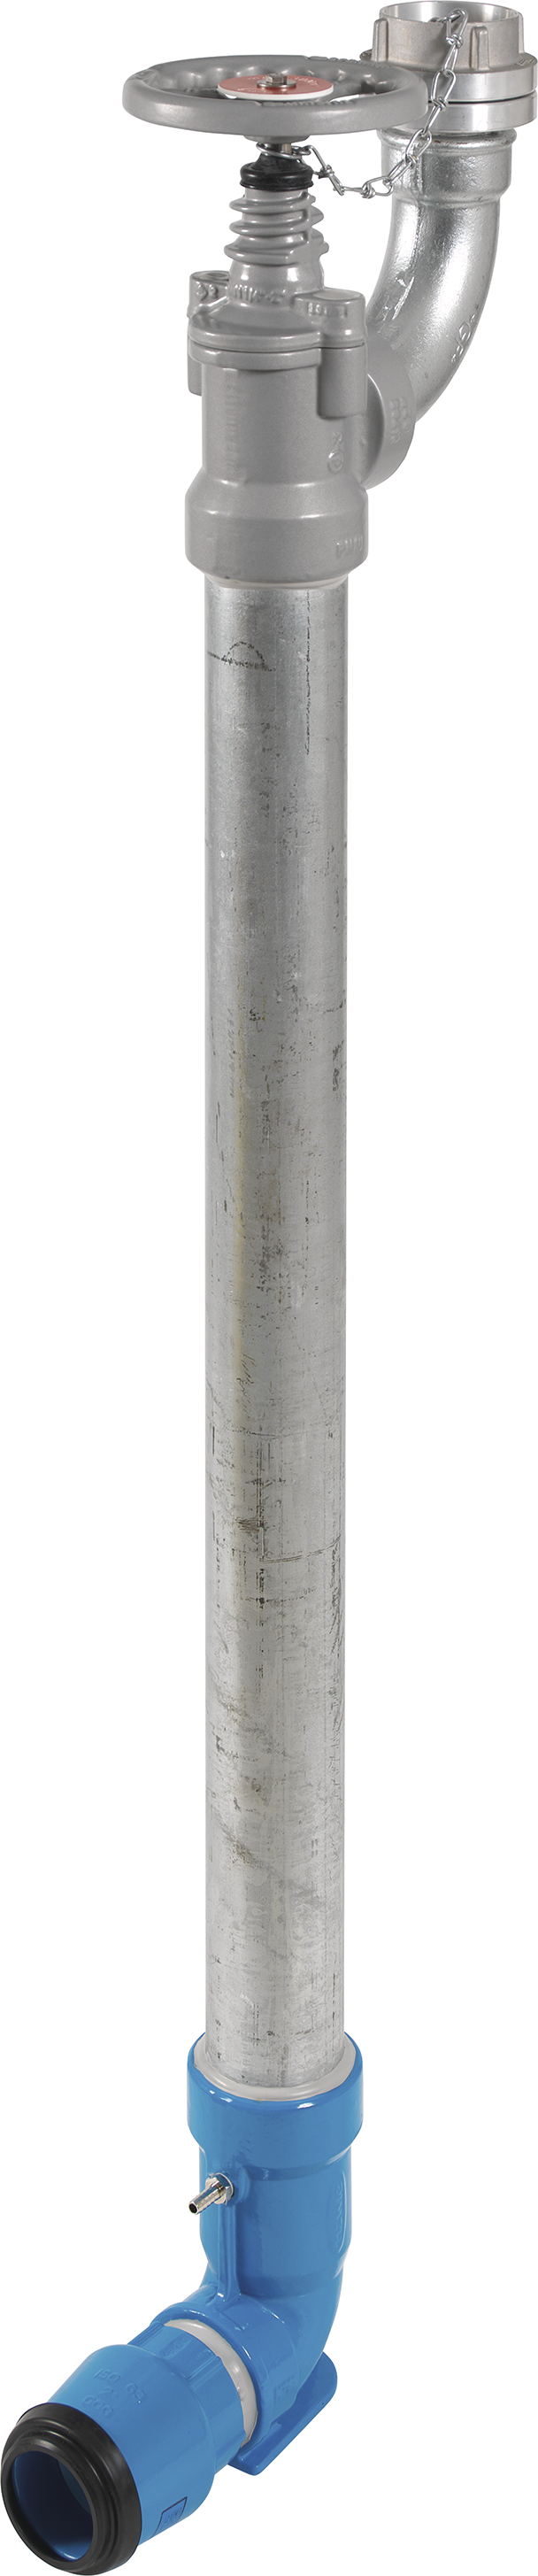 Bewässerungshydrant Unterflur N767 d 50mm, L = 600mm - Hawle Hydranten